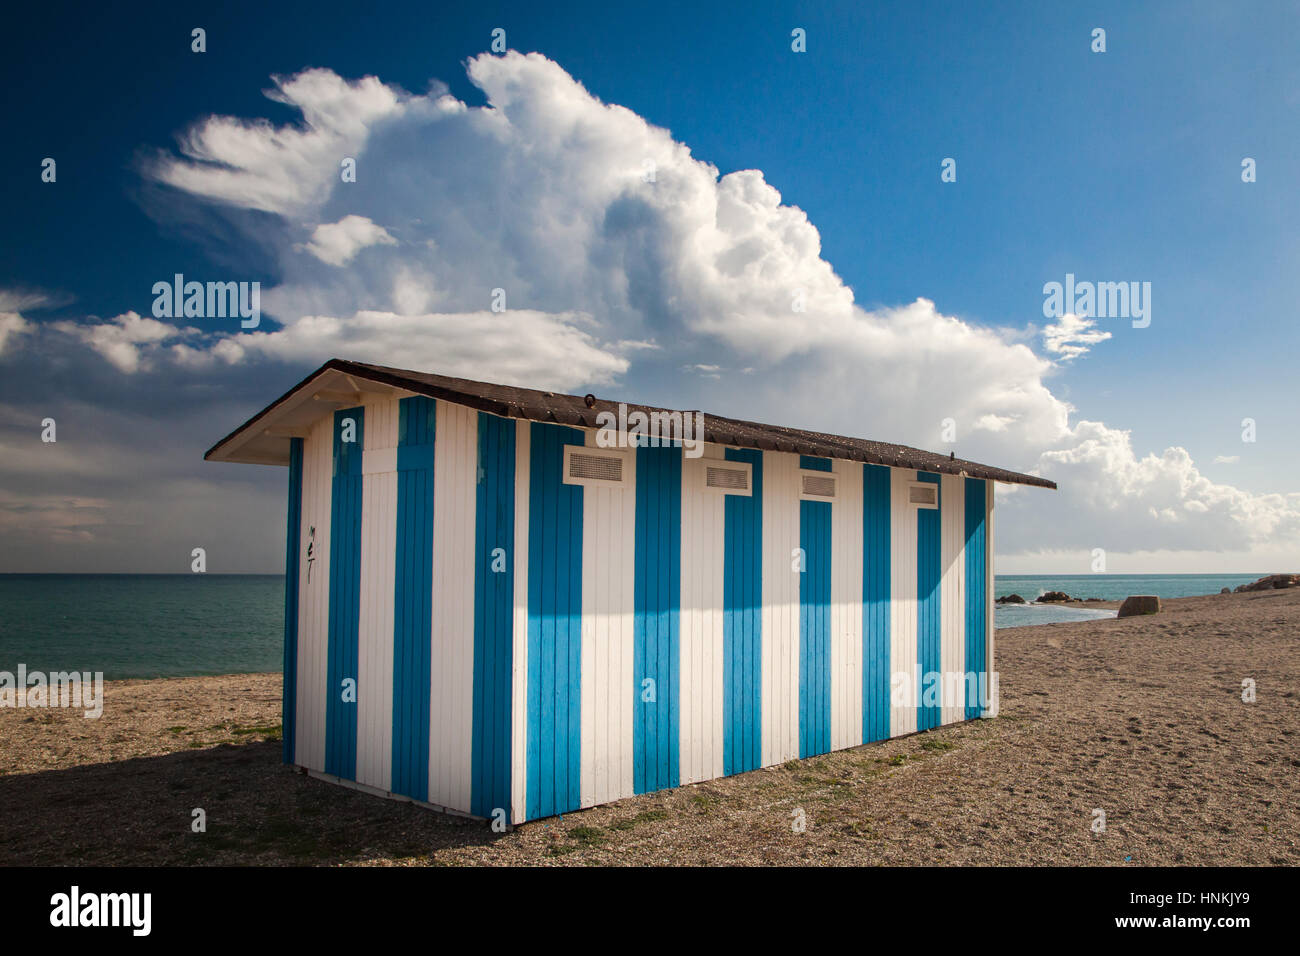 Une cabane de plage bleu et blanc sur la plage de Duquesa, dans le sud de l'Espagne Banque D'Images